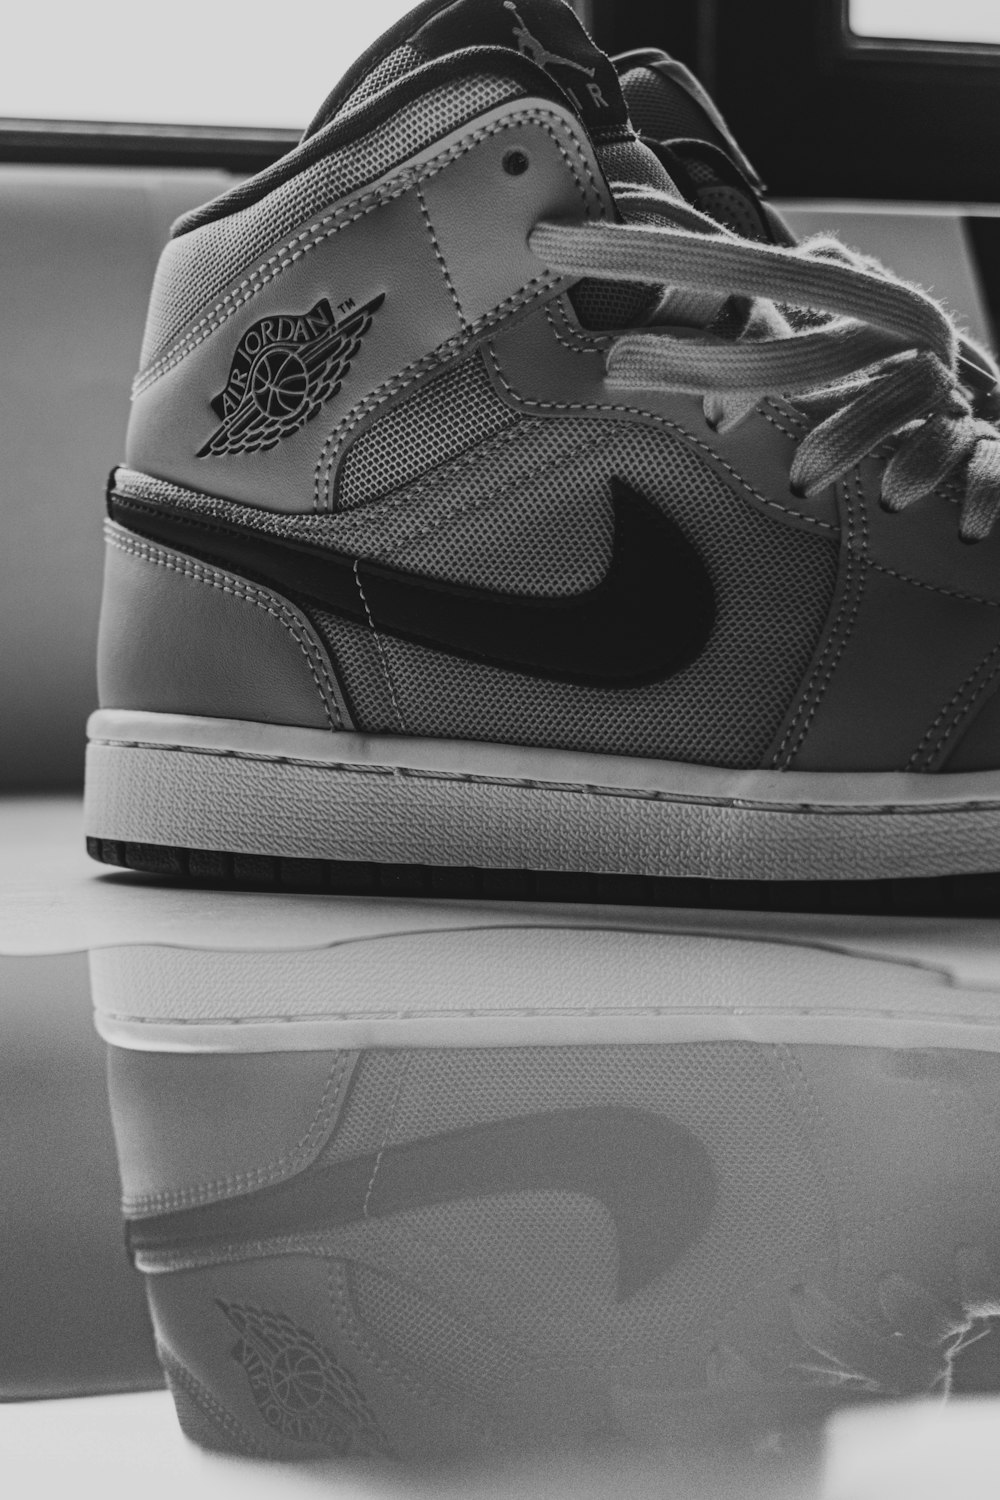 black and white nike athletic shoes photo – Free Grey Image on Unsplash